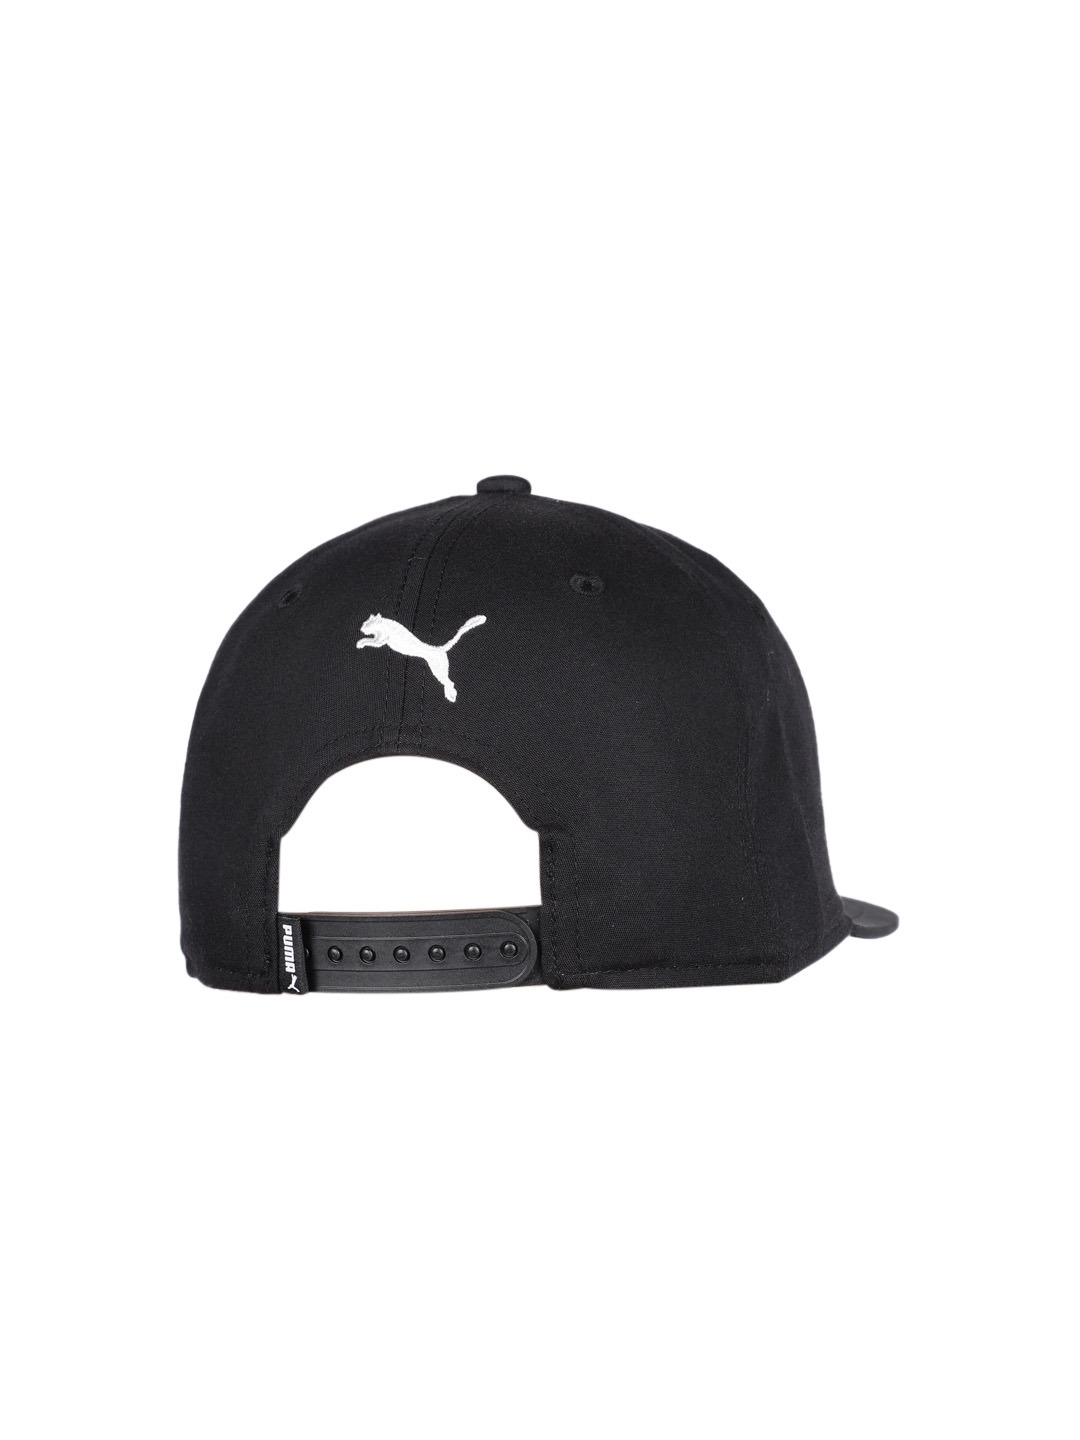 Accessories Caps | Puma Unisex Black Baseball Cap - GO05661